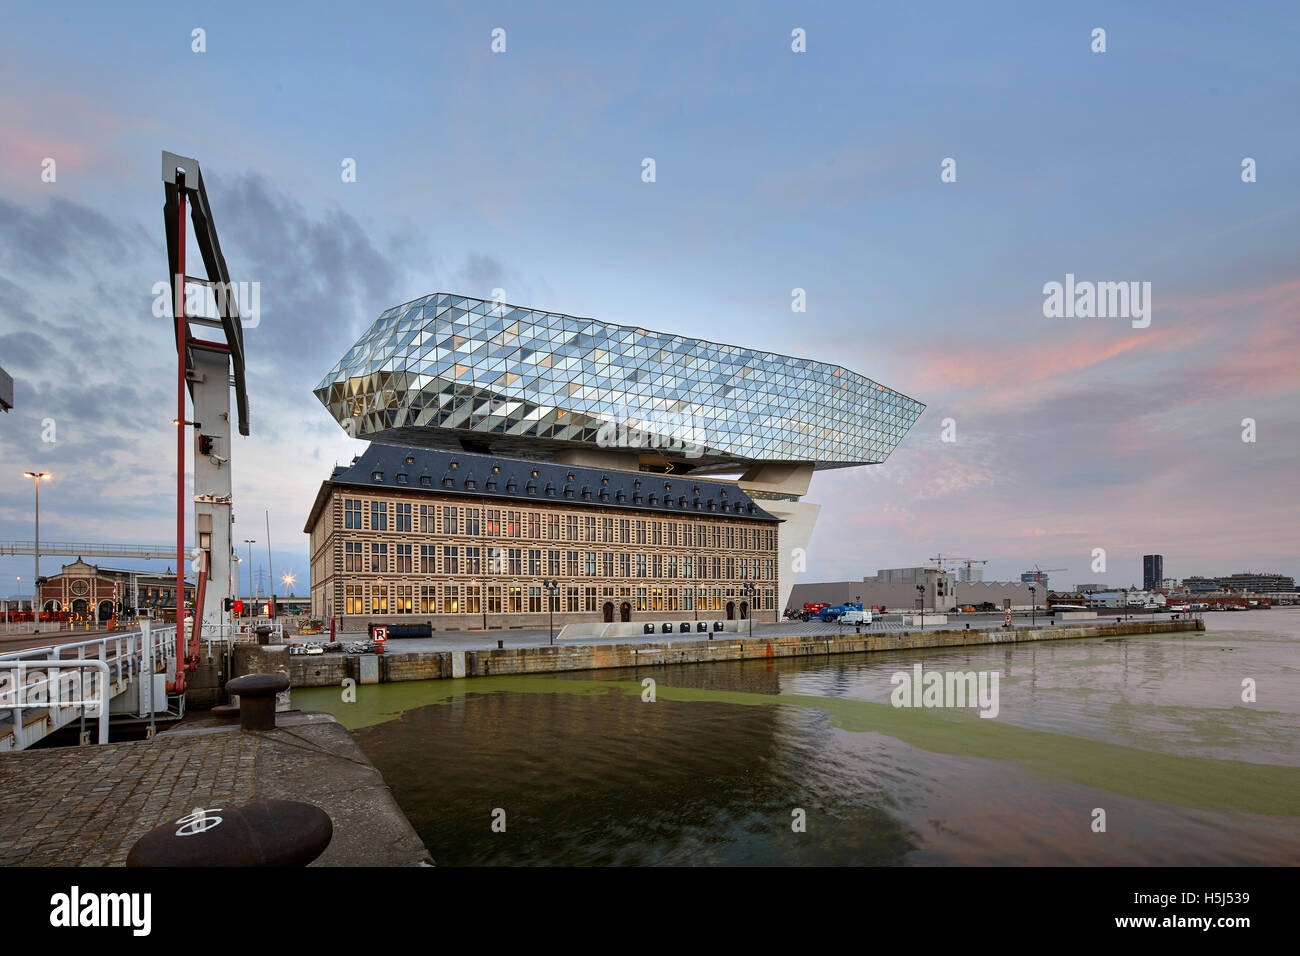 Vista contestuale attraverso waterside. Casa porta ad Anversa, Belgio. Architetto: Zaha Hadid Architects, 2016. Foto Stock